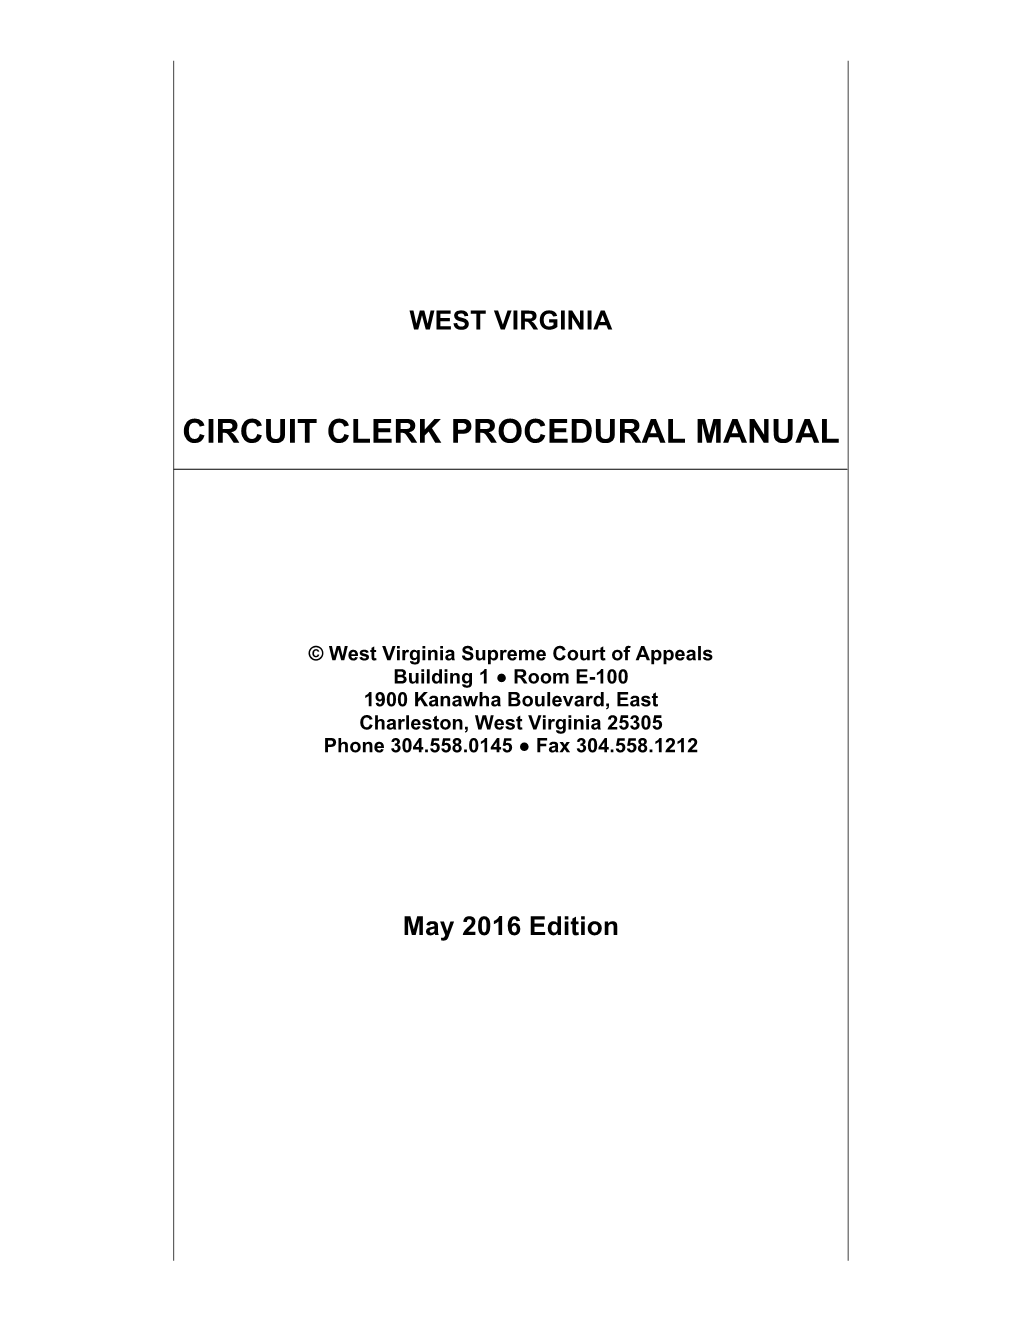 Circuit Clerk Procedural Manual